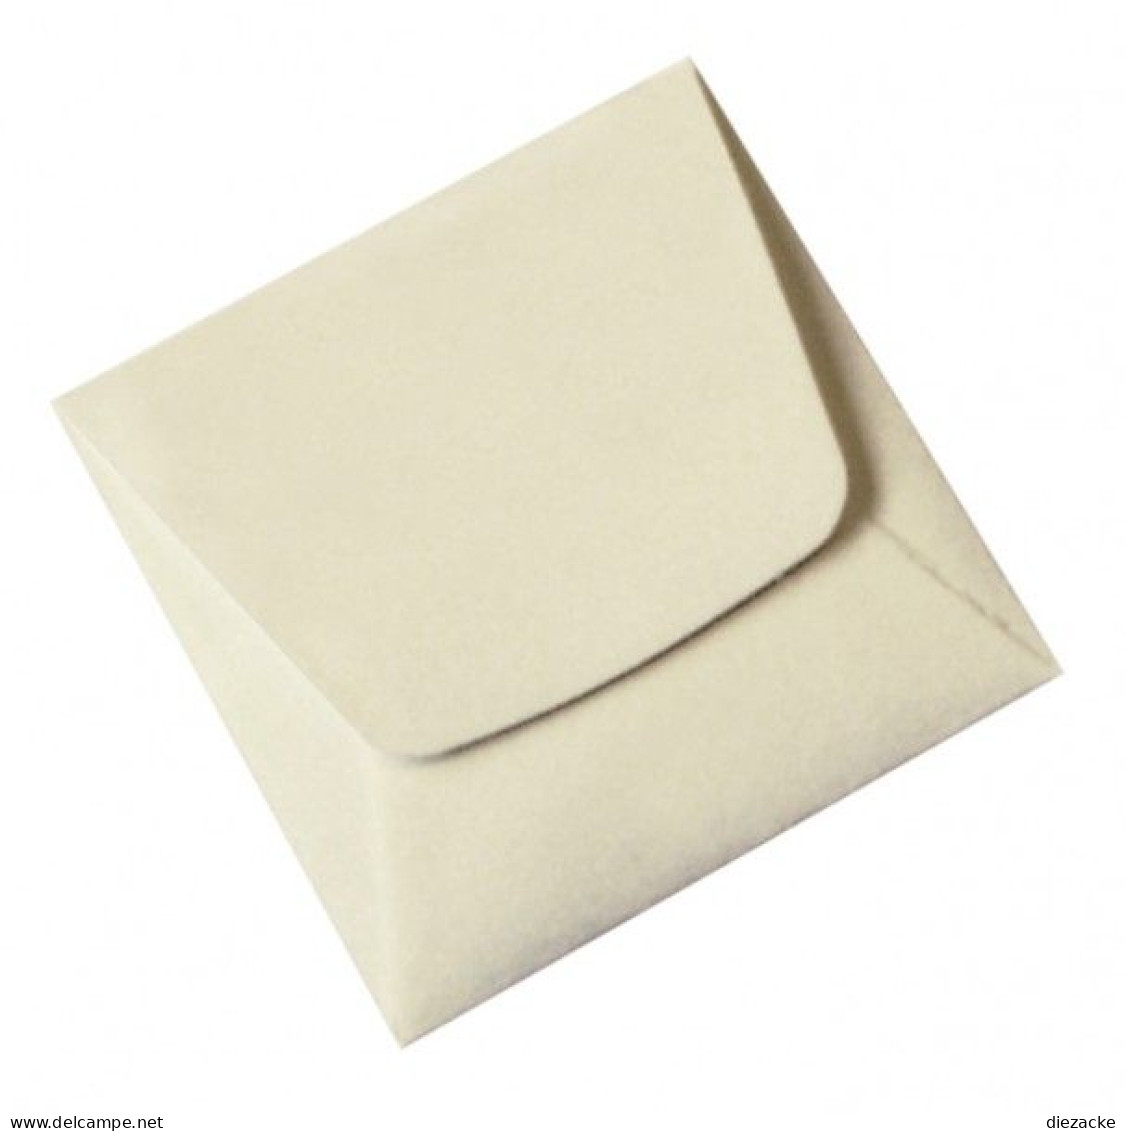 Lindner Münz-Taschen Aus Weißem Papier, 70 X 70 Mm, 8473 (100er Packung) Neu - Supplies And Equipment